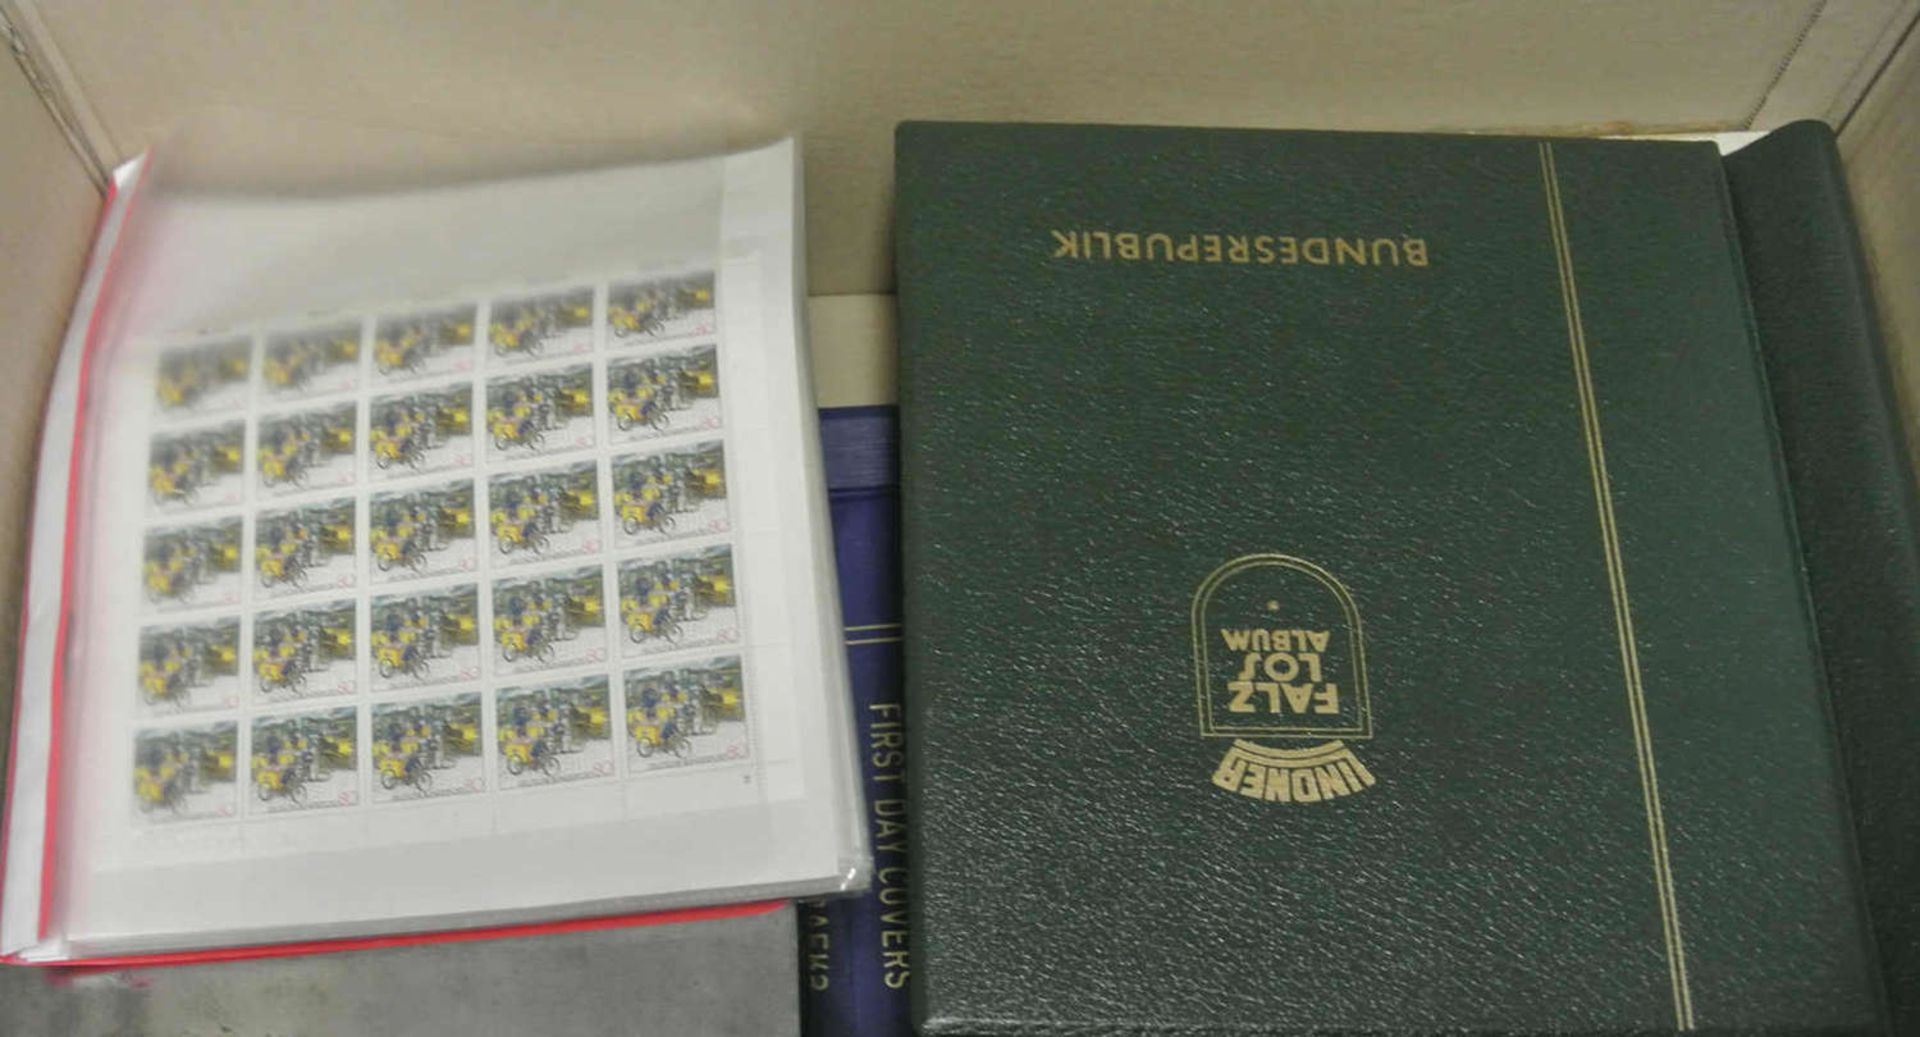 1 Karton voll Briefmarken und Belege in Alben, dabei auch Bogenware. Viel ältere Ware. Bitte